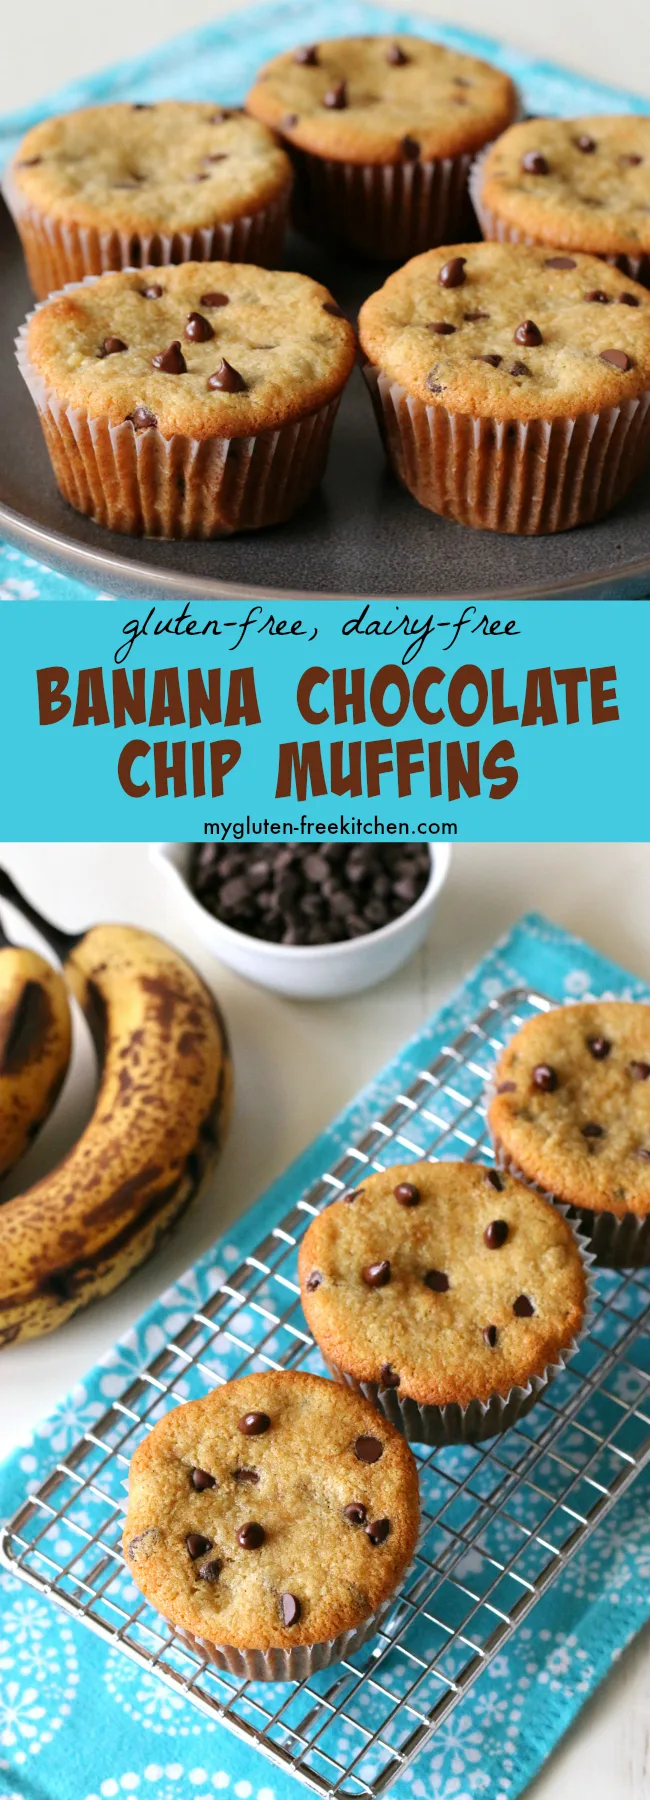 Gluten-free Dairy-free Banana Chocolate Chip Muffins Recipe